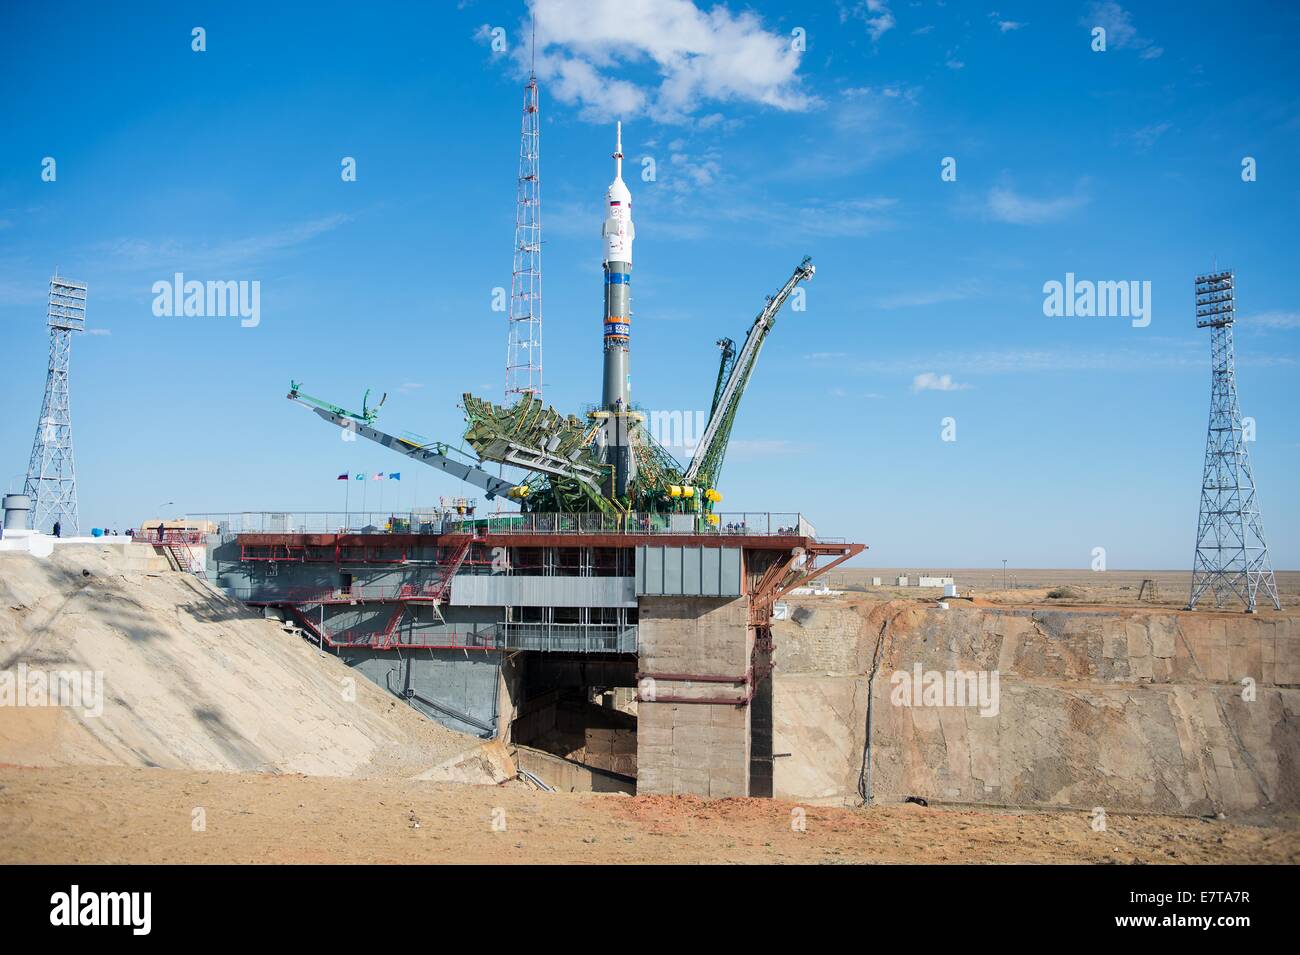 Il gantry bracci iniziano a chiudersi attorno alla Soyuz TMA-14M veicolo spaziale dopo essere stata sollevata in posizione sulla rampa di lancio presso il cosmodromo di Baikonur Settembre 23, 2014 in Kazakistan. Lancio del razzo Soyuz è prevista per settembre. 26 e porterà Expedition 41 equipaggio alla Stazione Spaziale Internazionale per un cinque e mezzo mesi di missione. Foto Stock